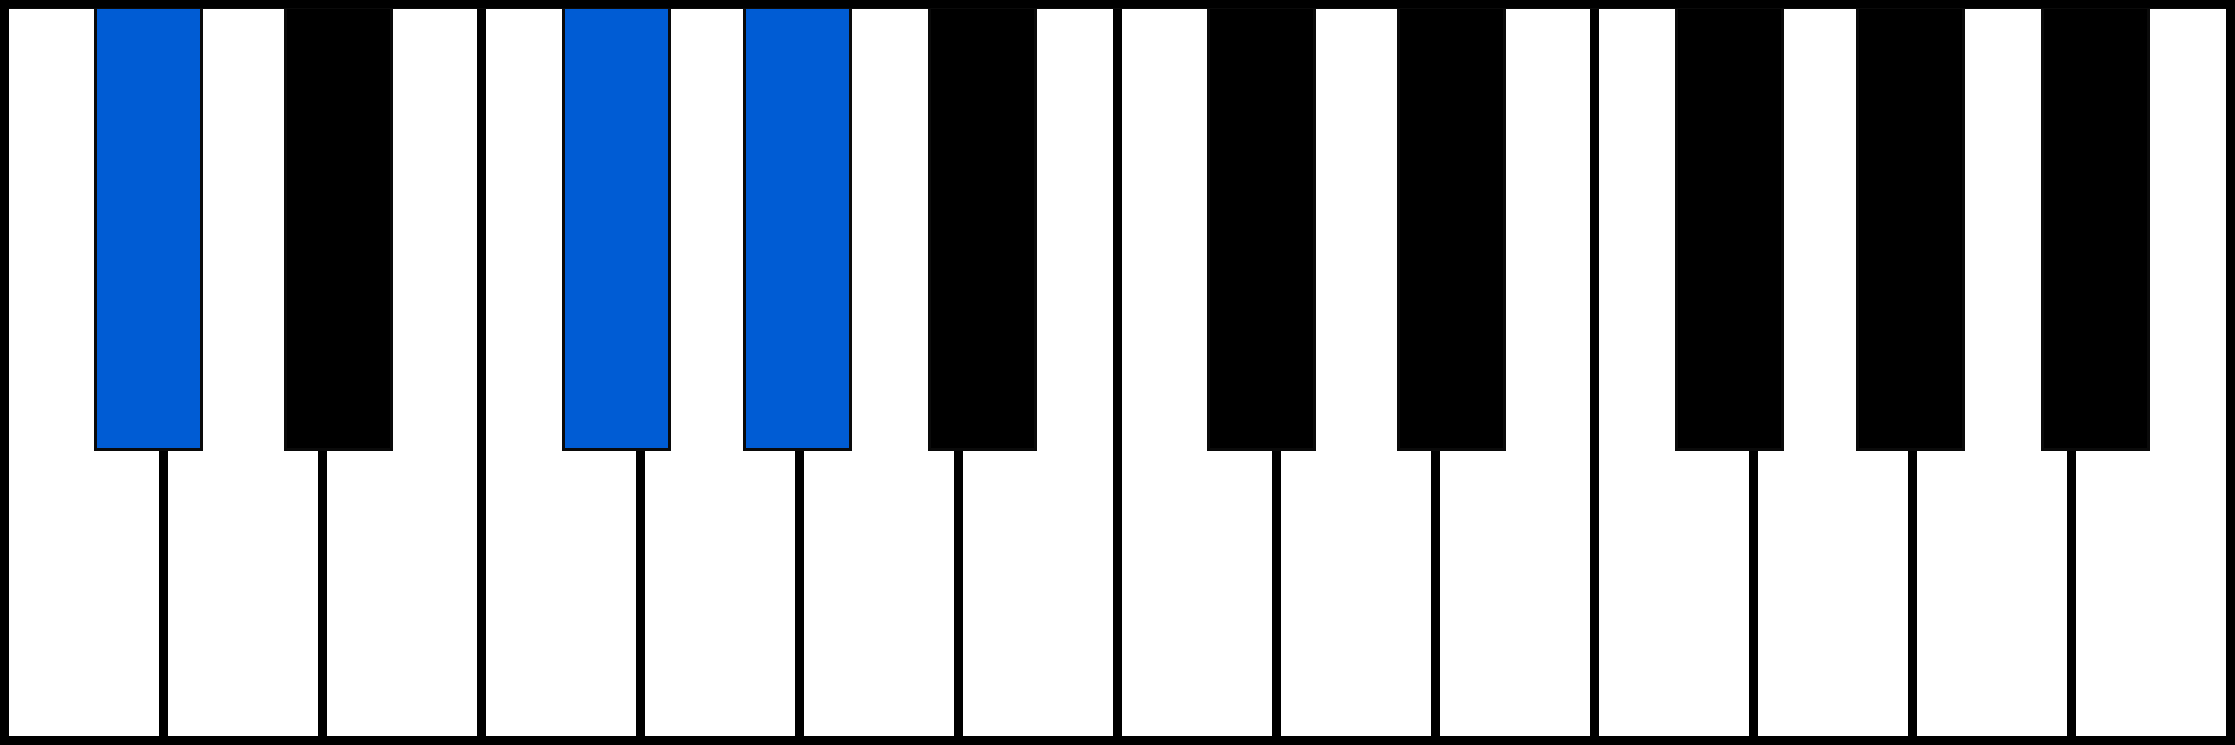 C#sus4 piano chord